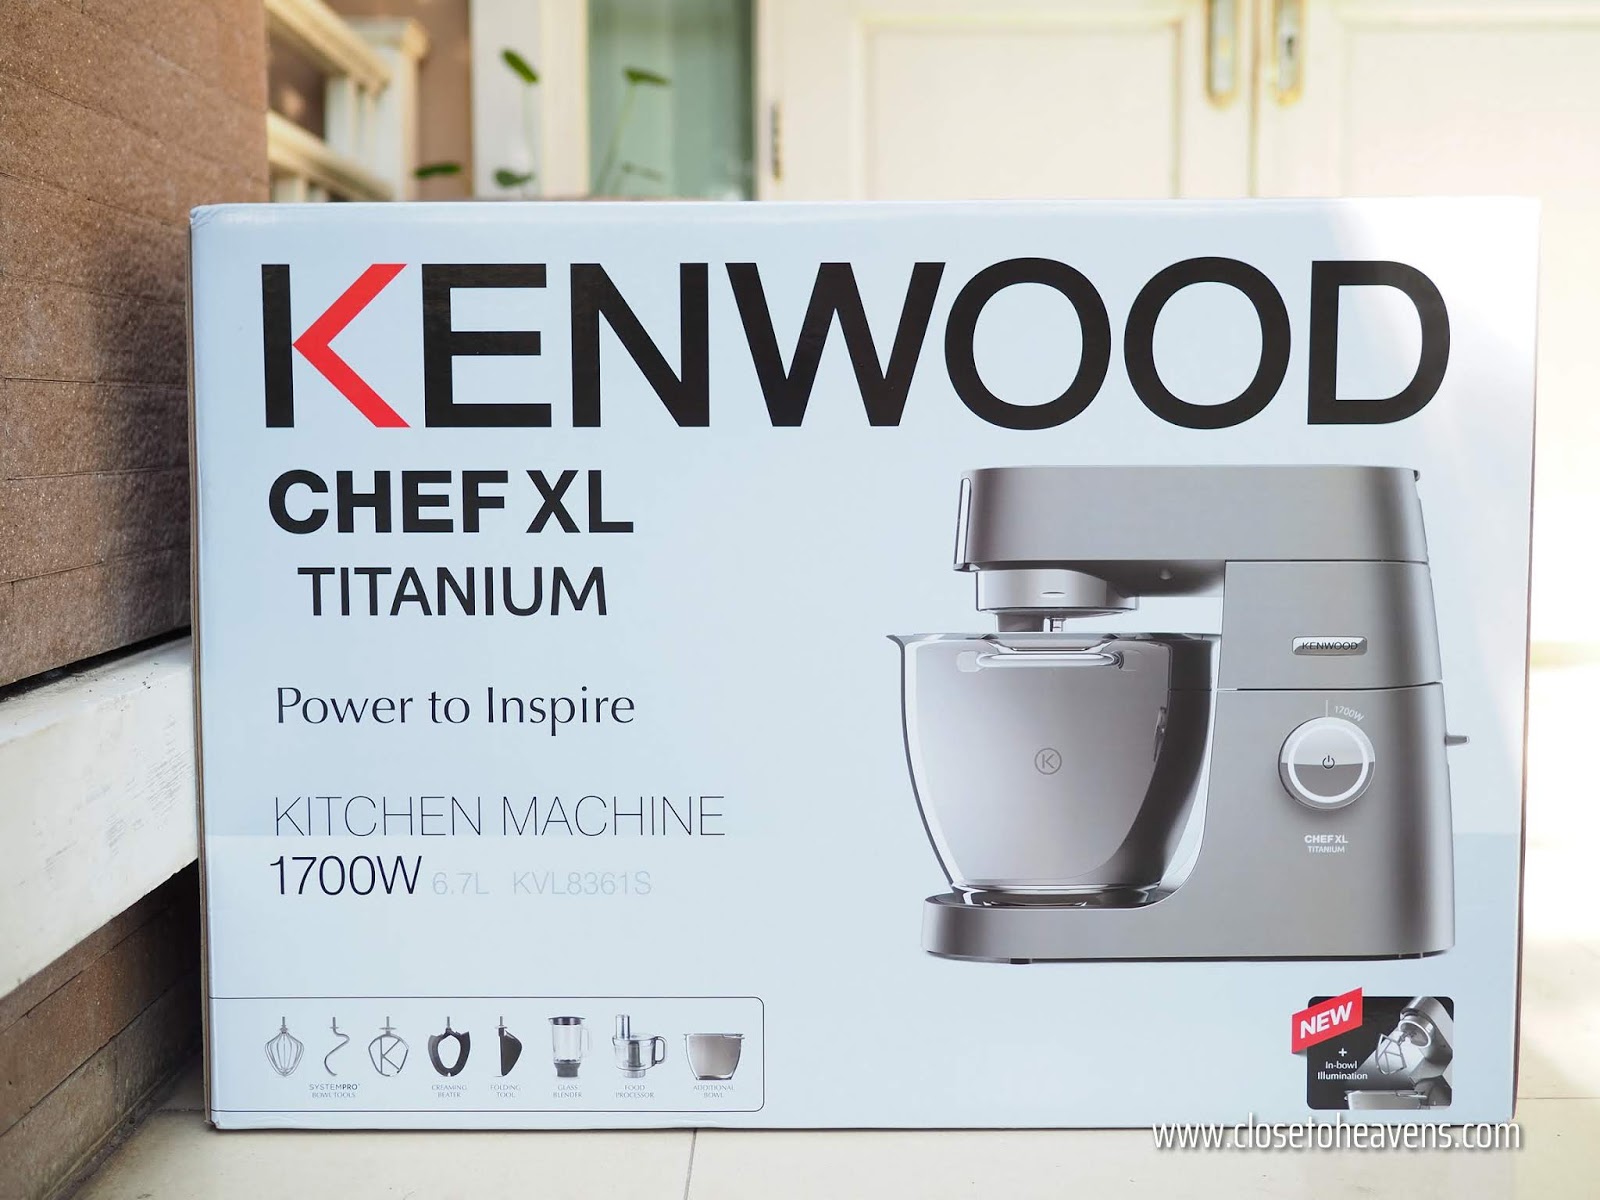 เครื่องผสมอาหาร Kenwood Chef XL Titanium KVL8361S